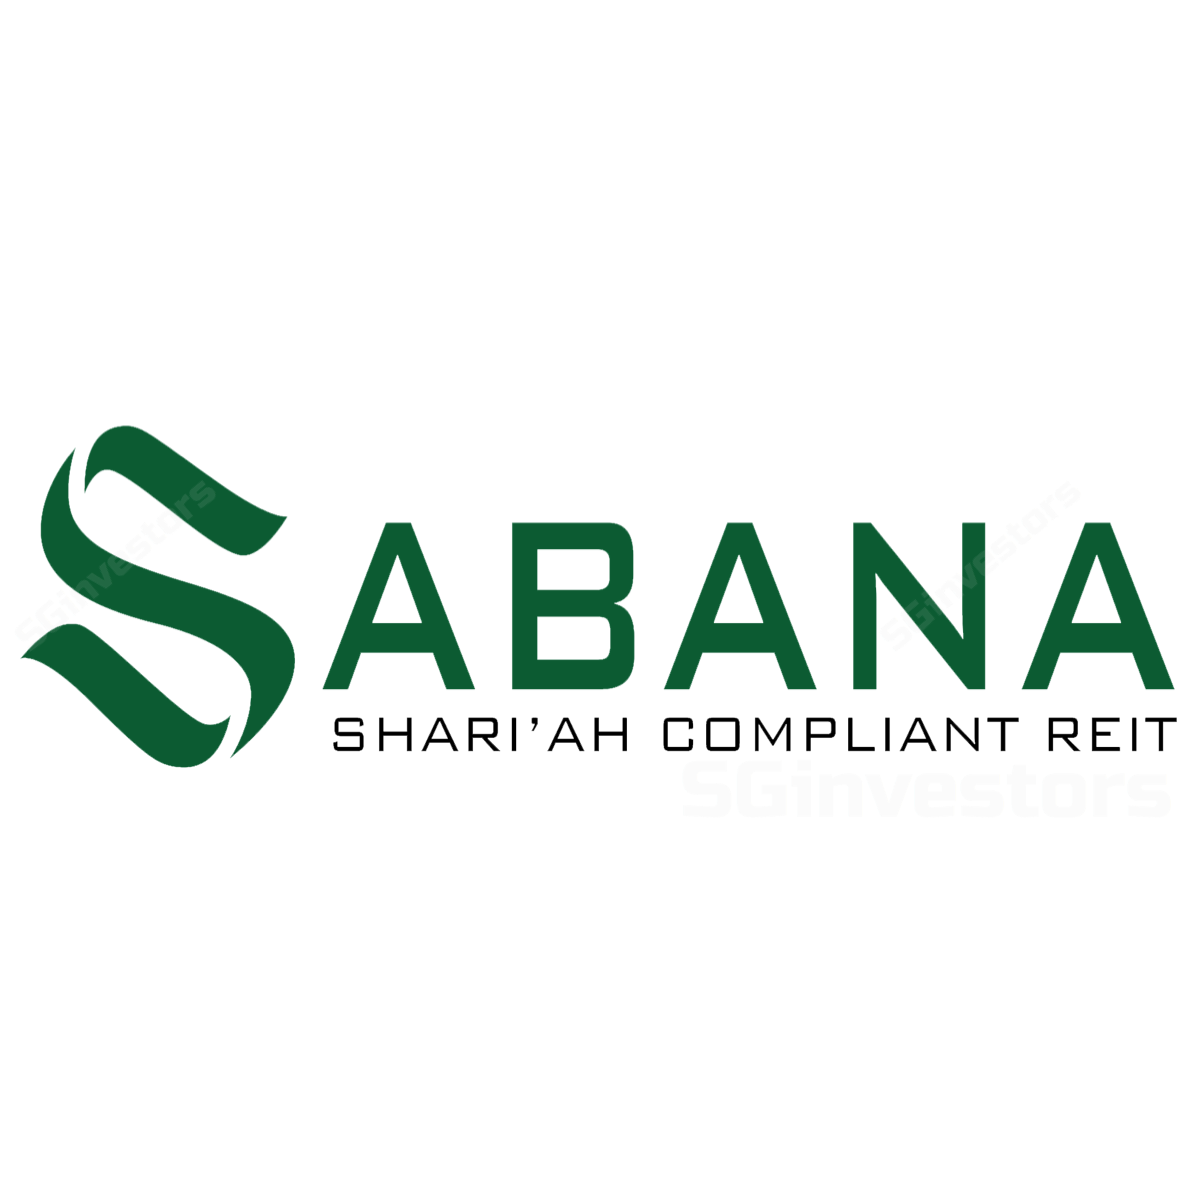 SABANA SHARI'AH COMPLIANT REIT (SGX:M1GU) | SGinvestors.io